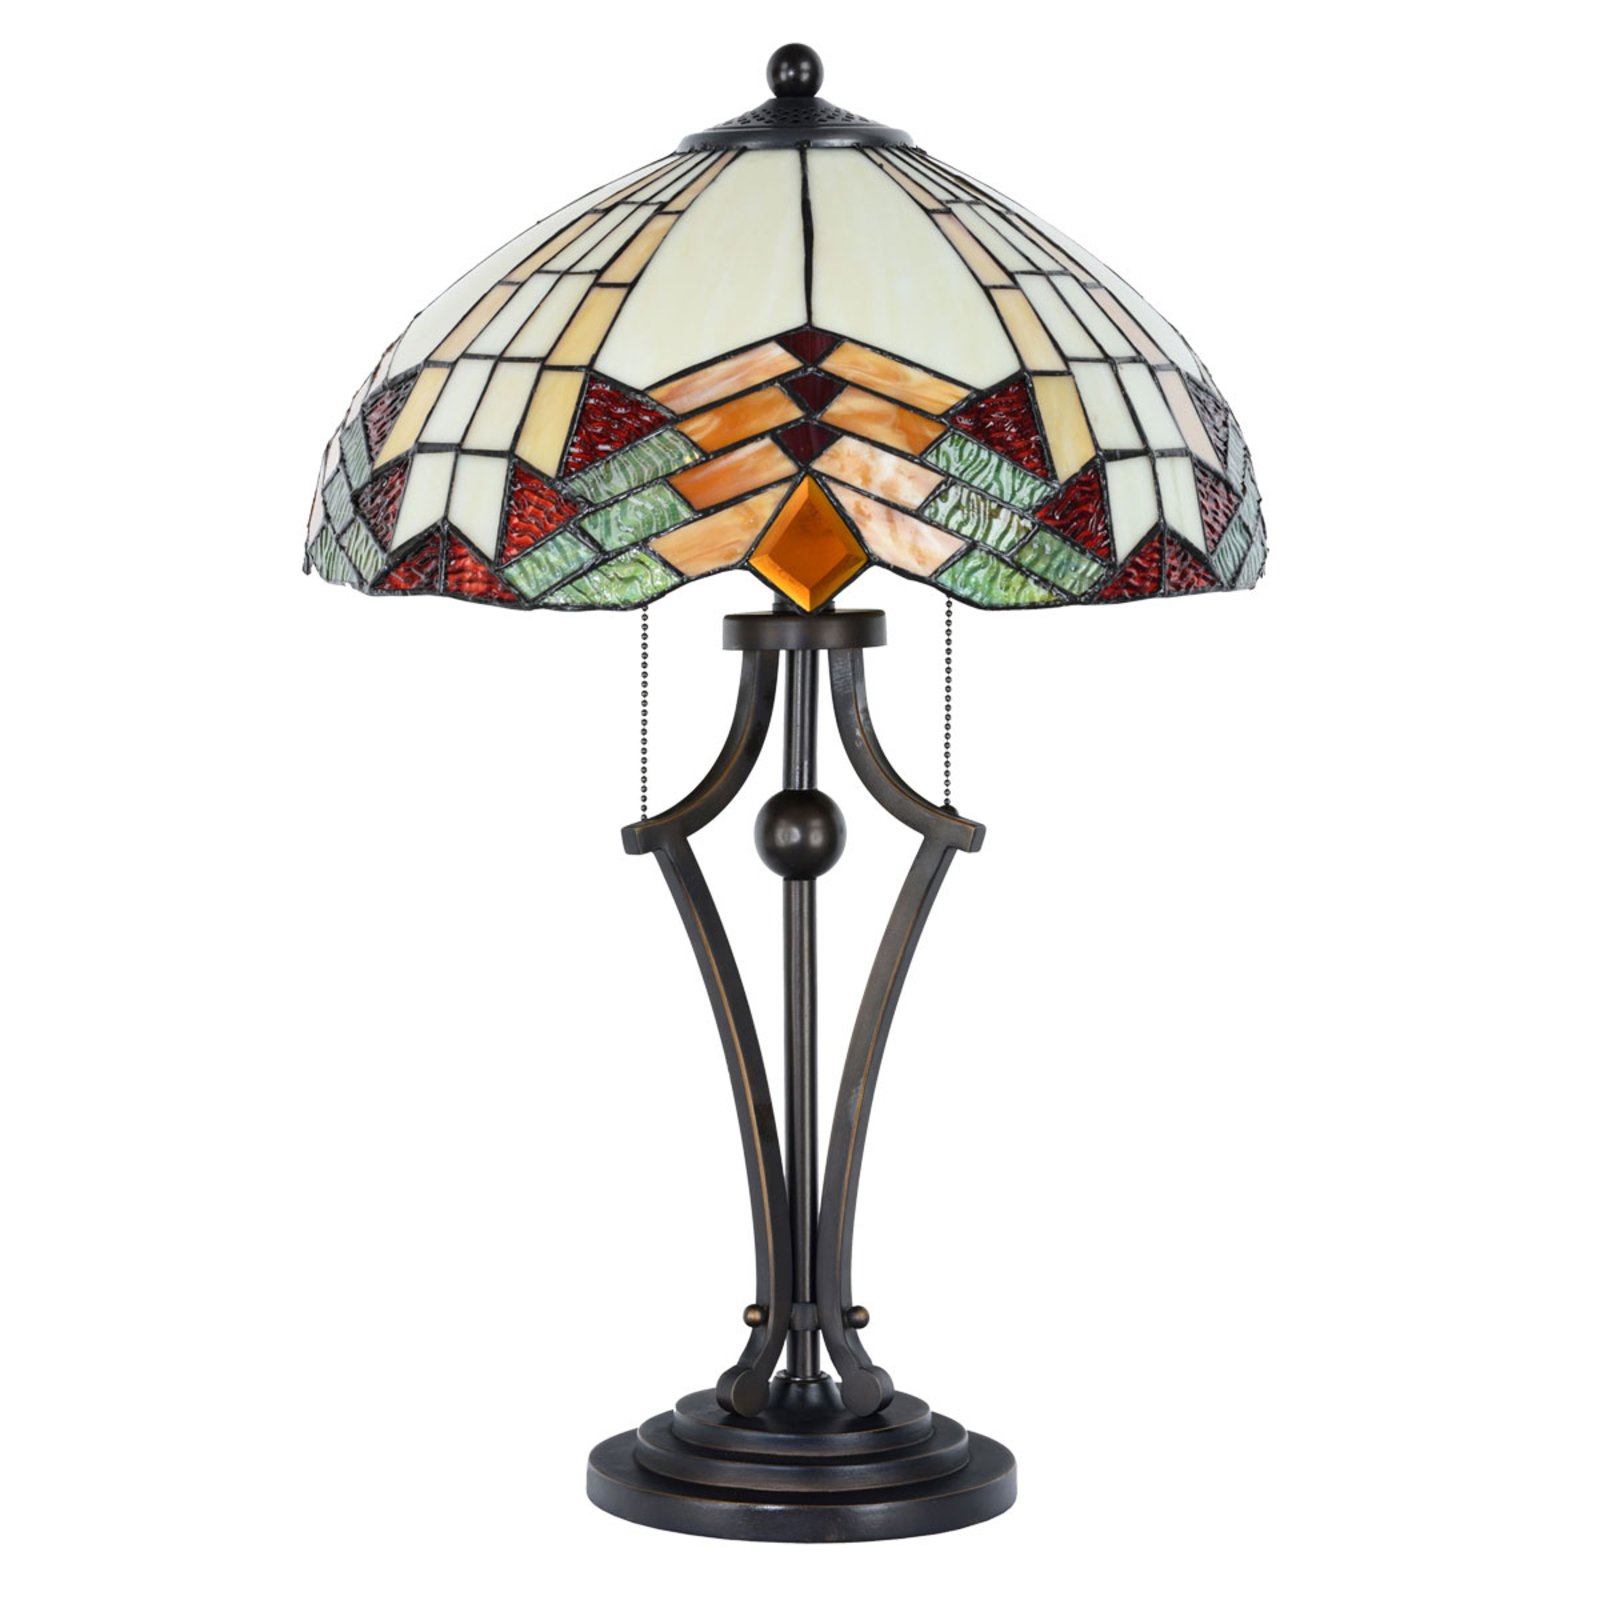 Stolna lampa 5961 u Tiffany izgledu sa šarenim staklom